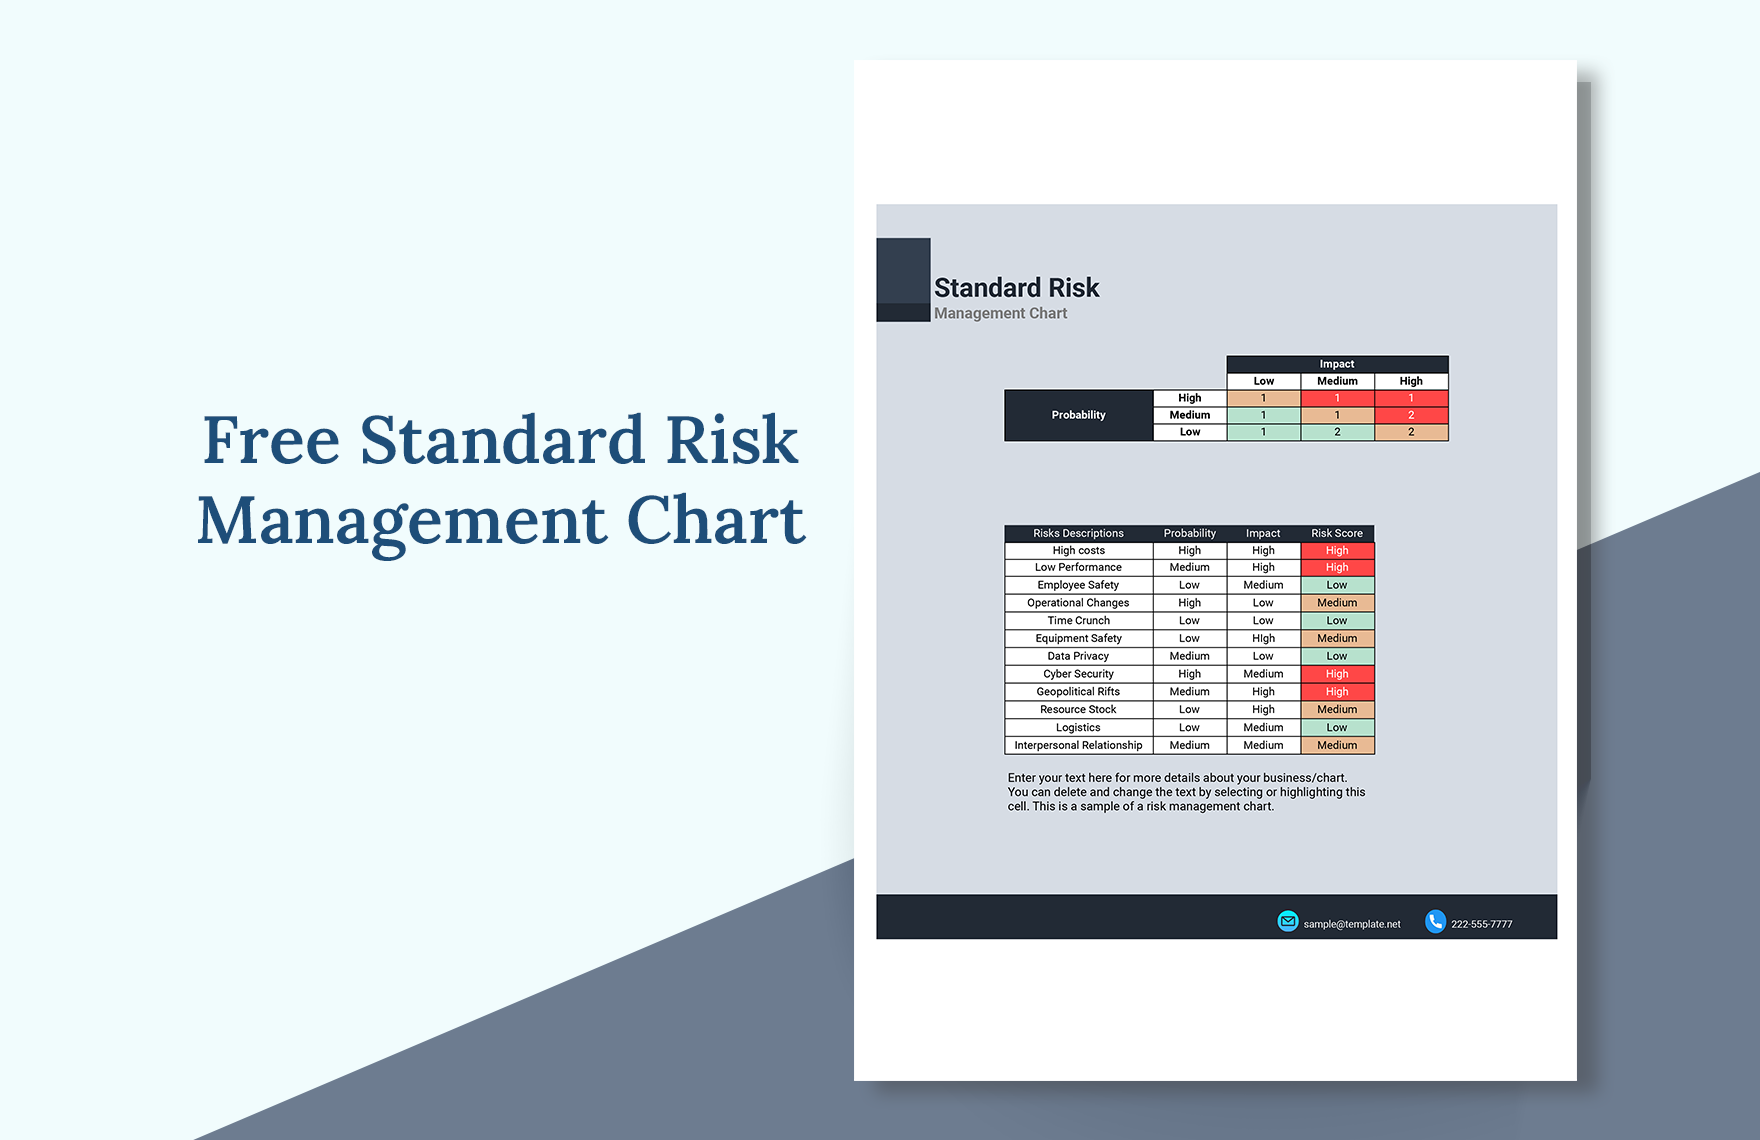 Standard Risk Management Chart